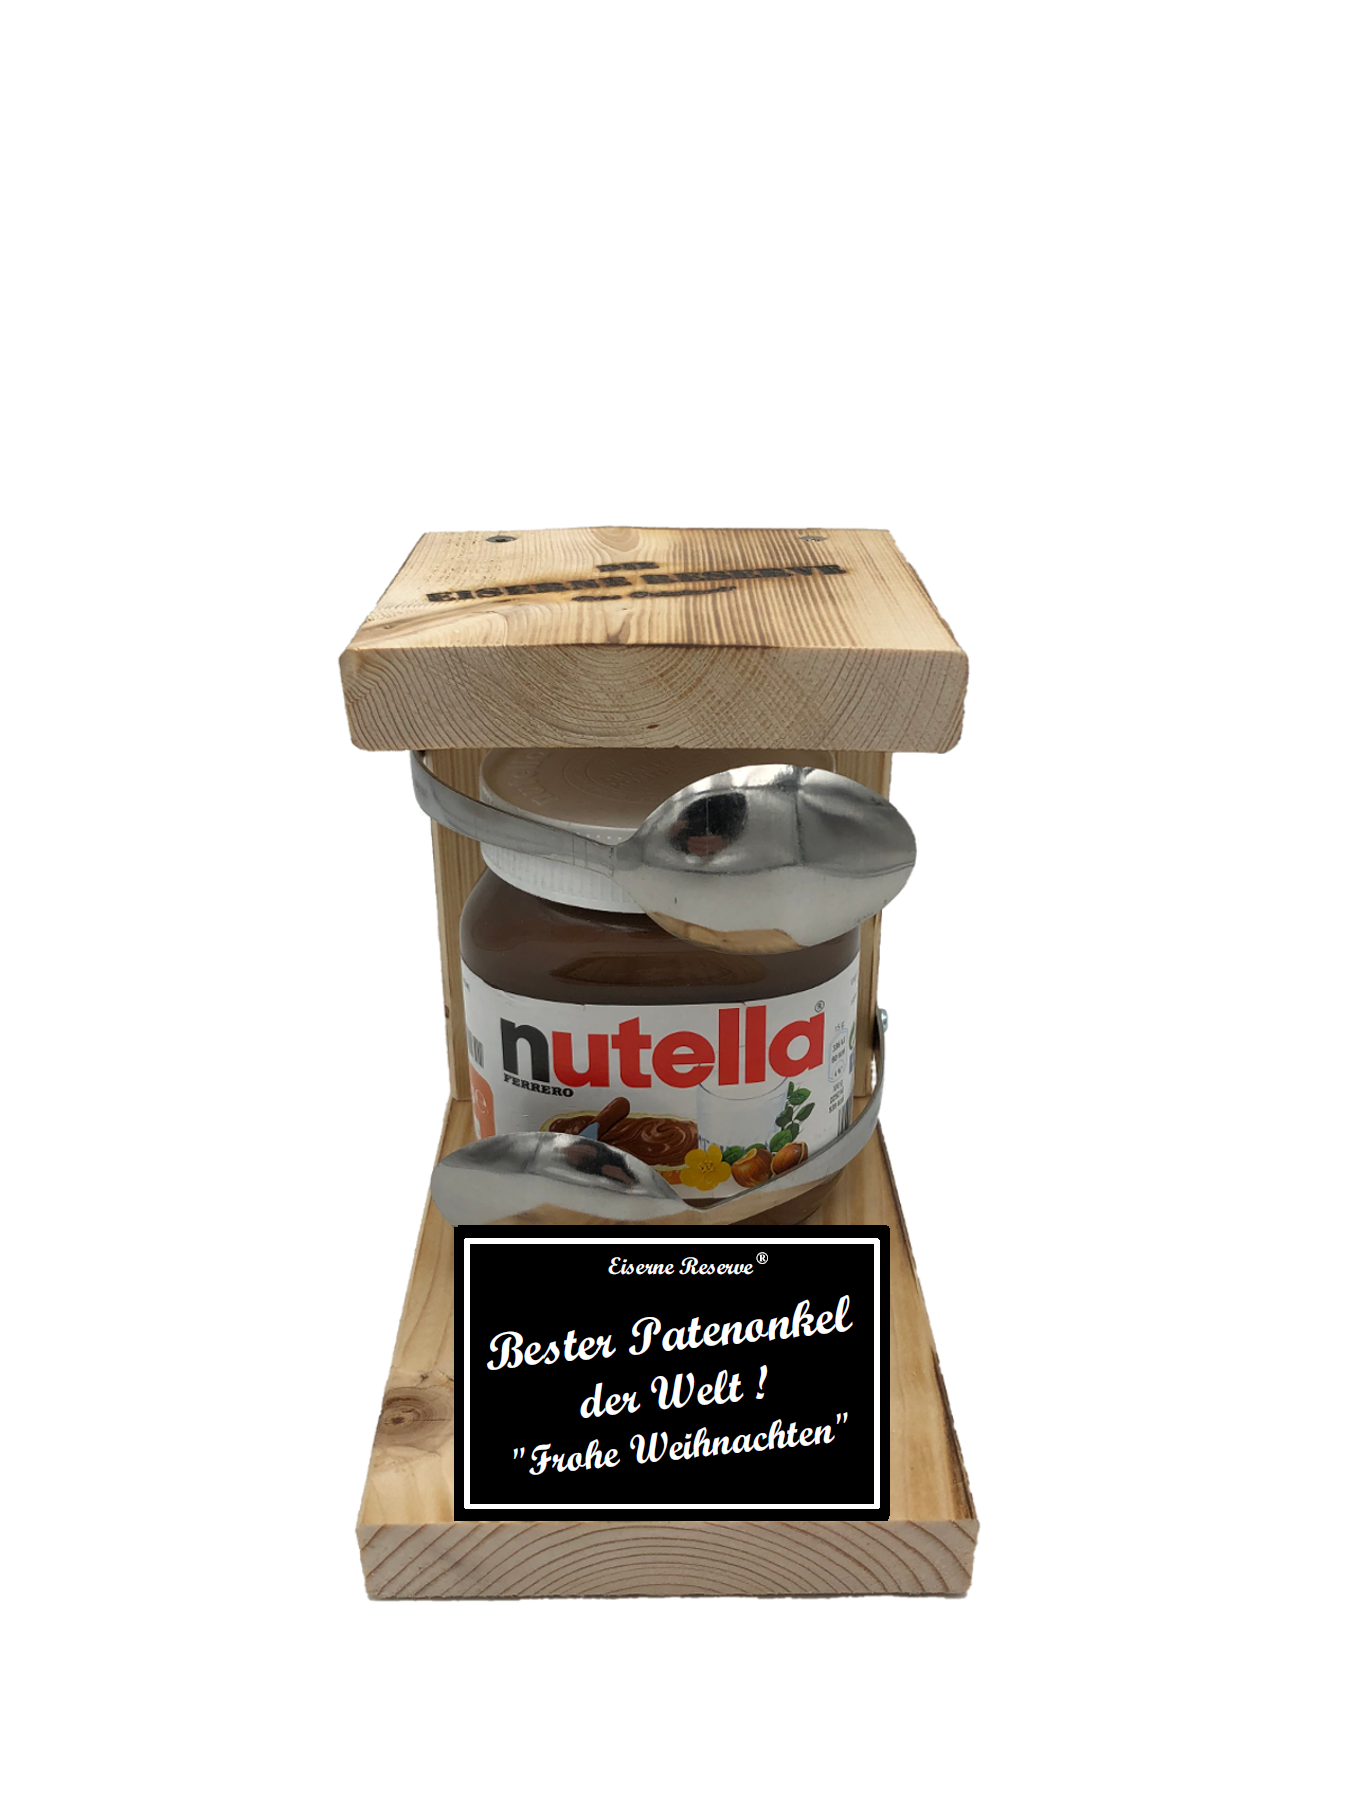 Bester Patenonkel der Welt Frohe Weihnachten Löffel Nutella Geschenk - Die Nutella Geschenkidee